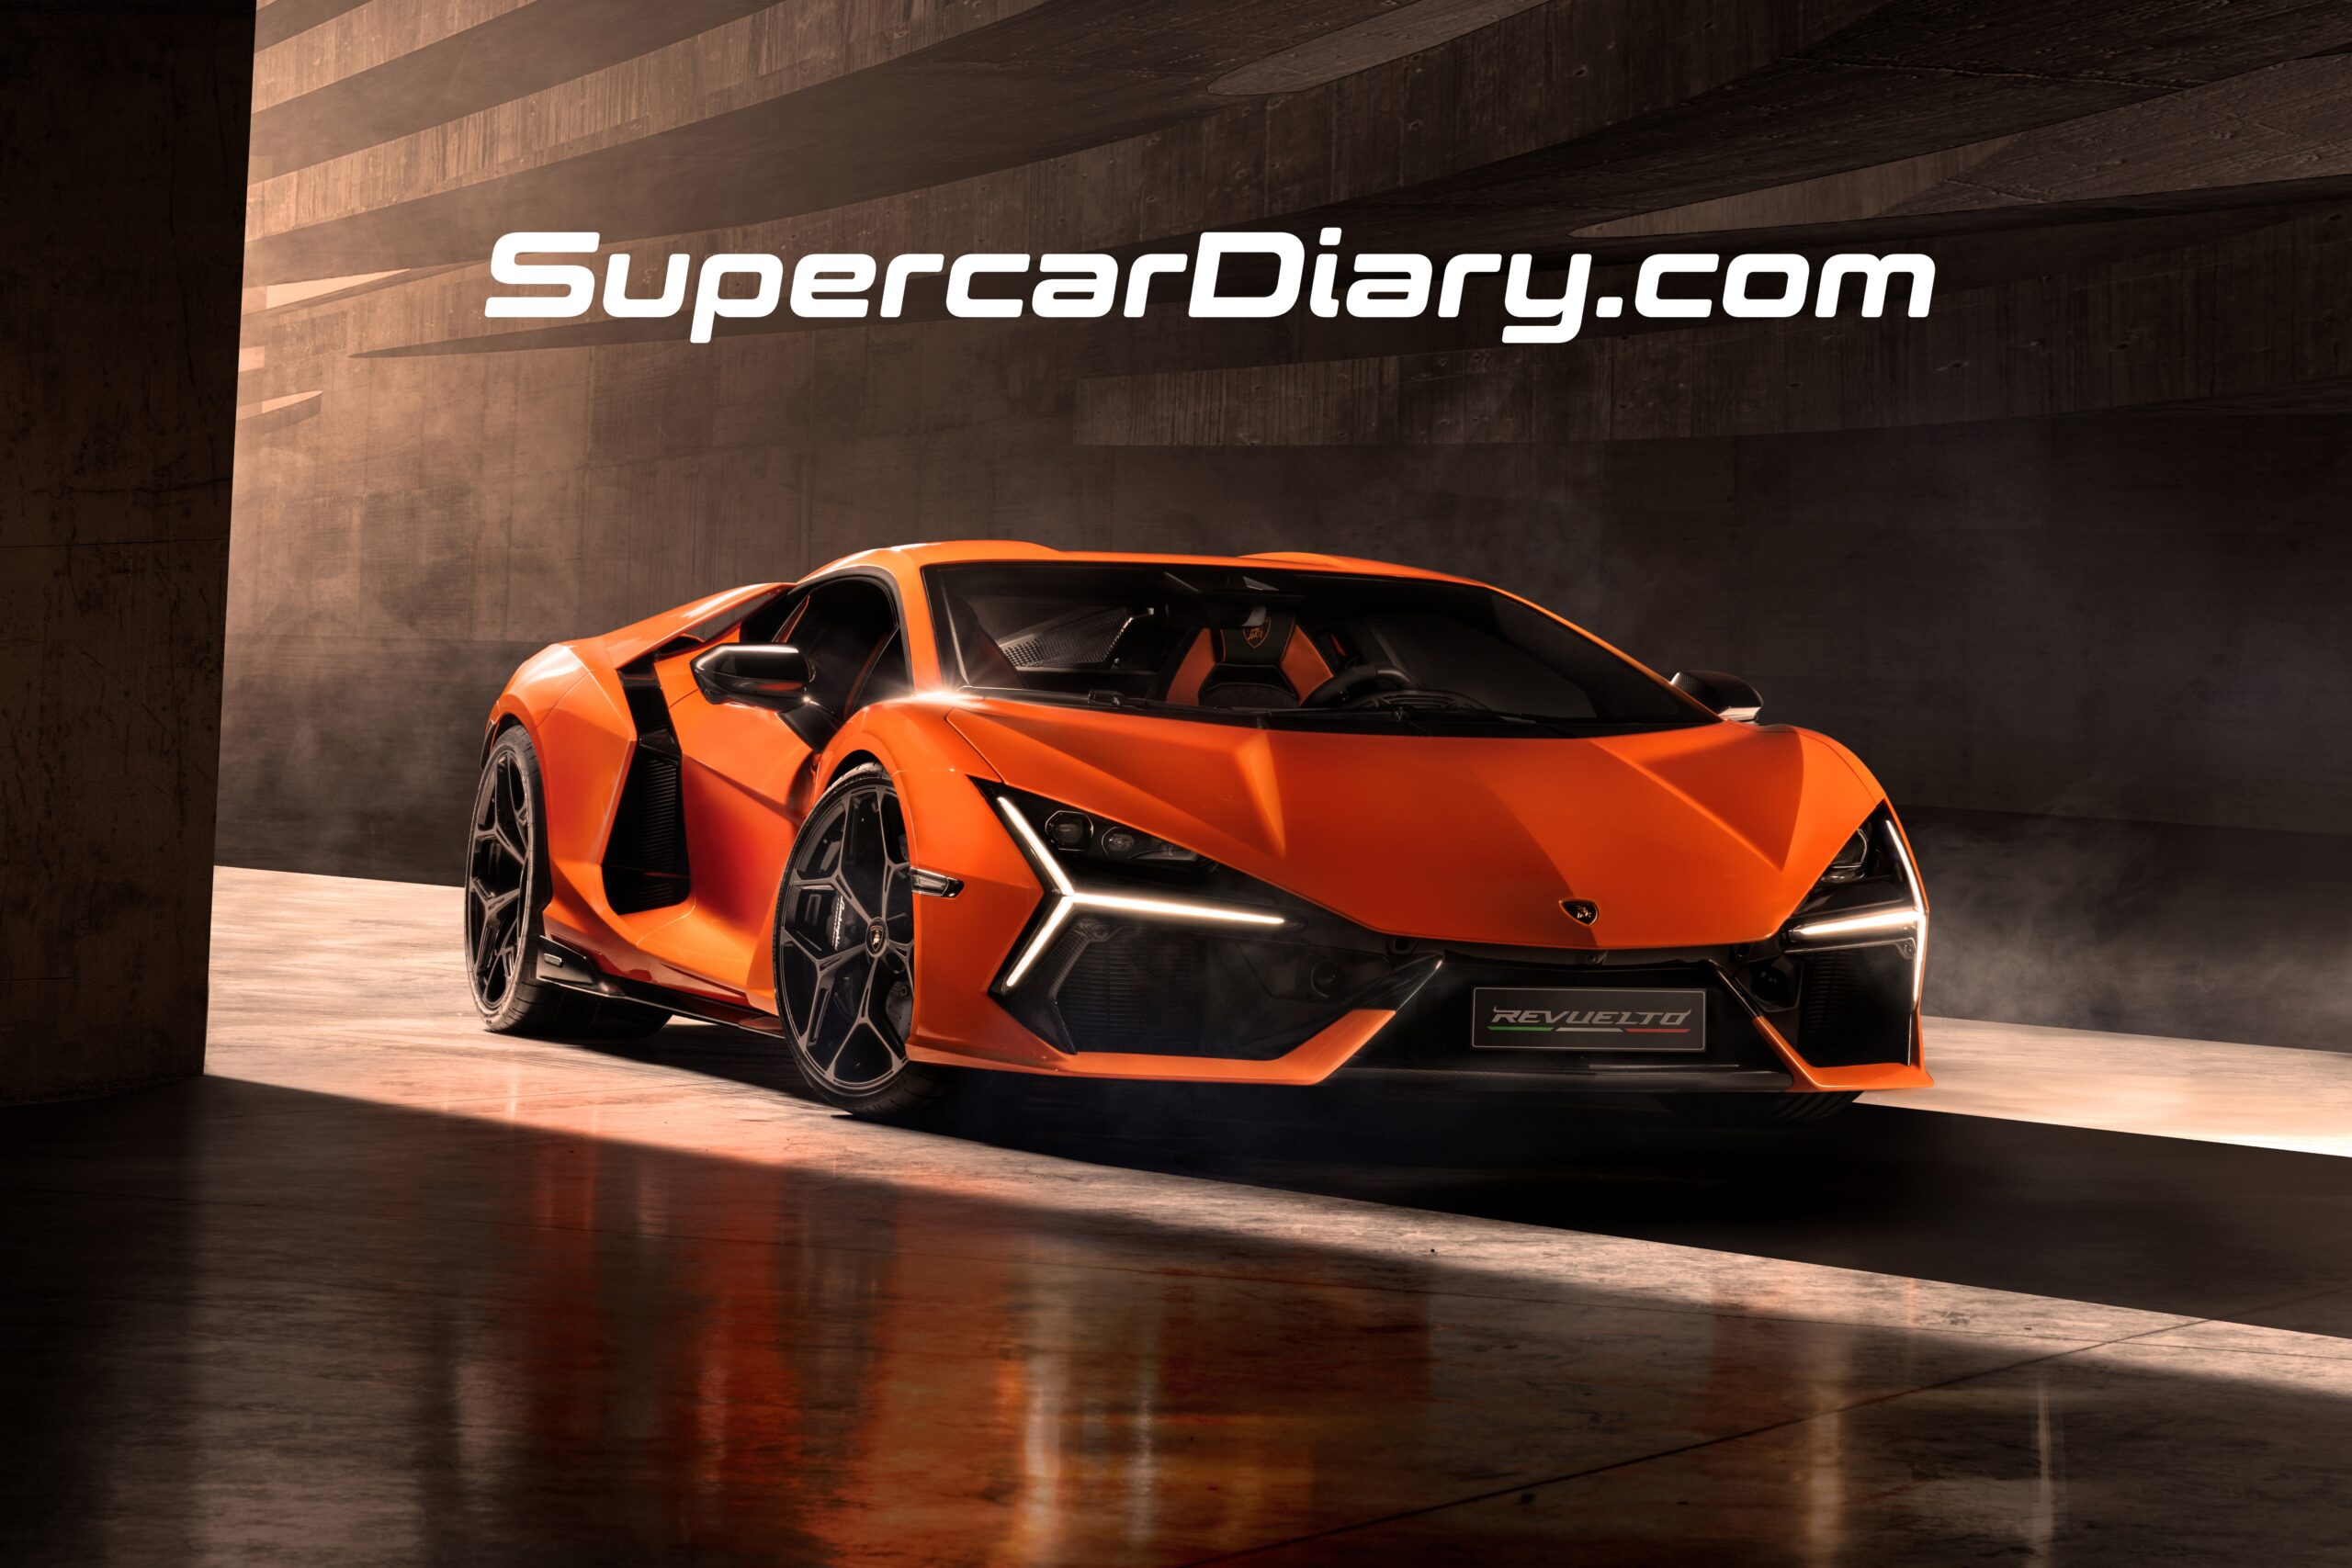 Supercar Diary -Lamborghini Revuelto